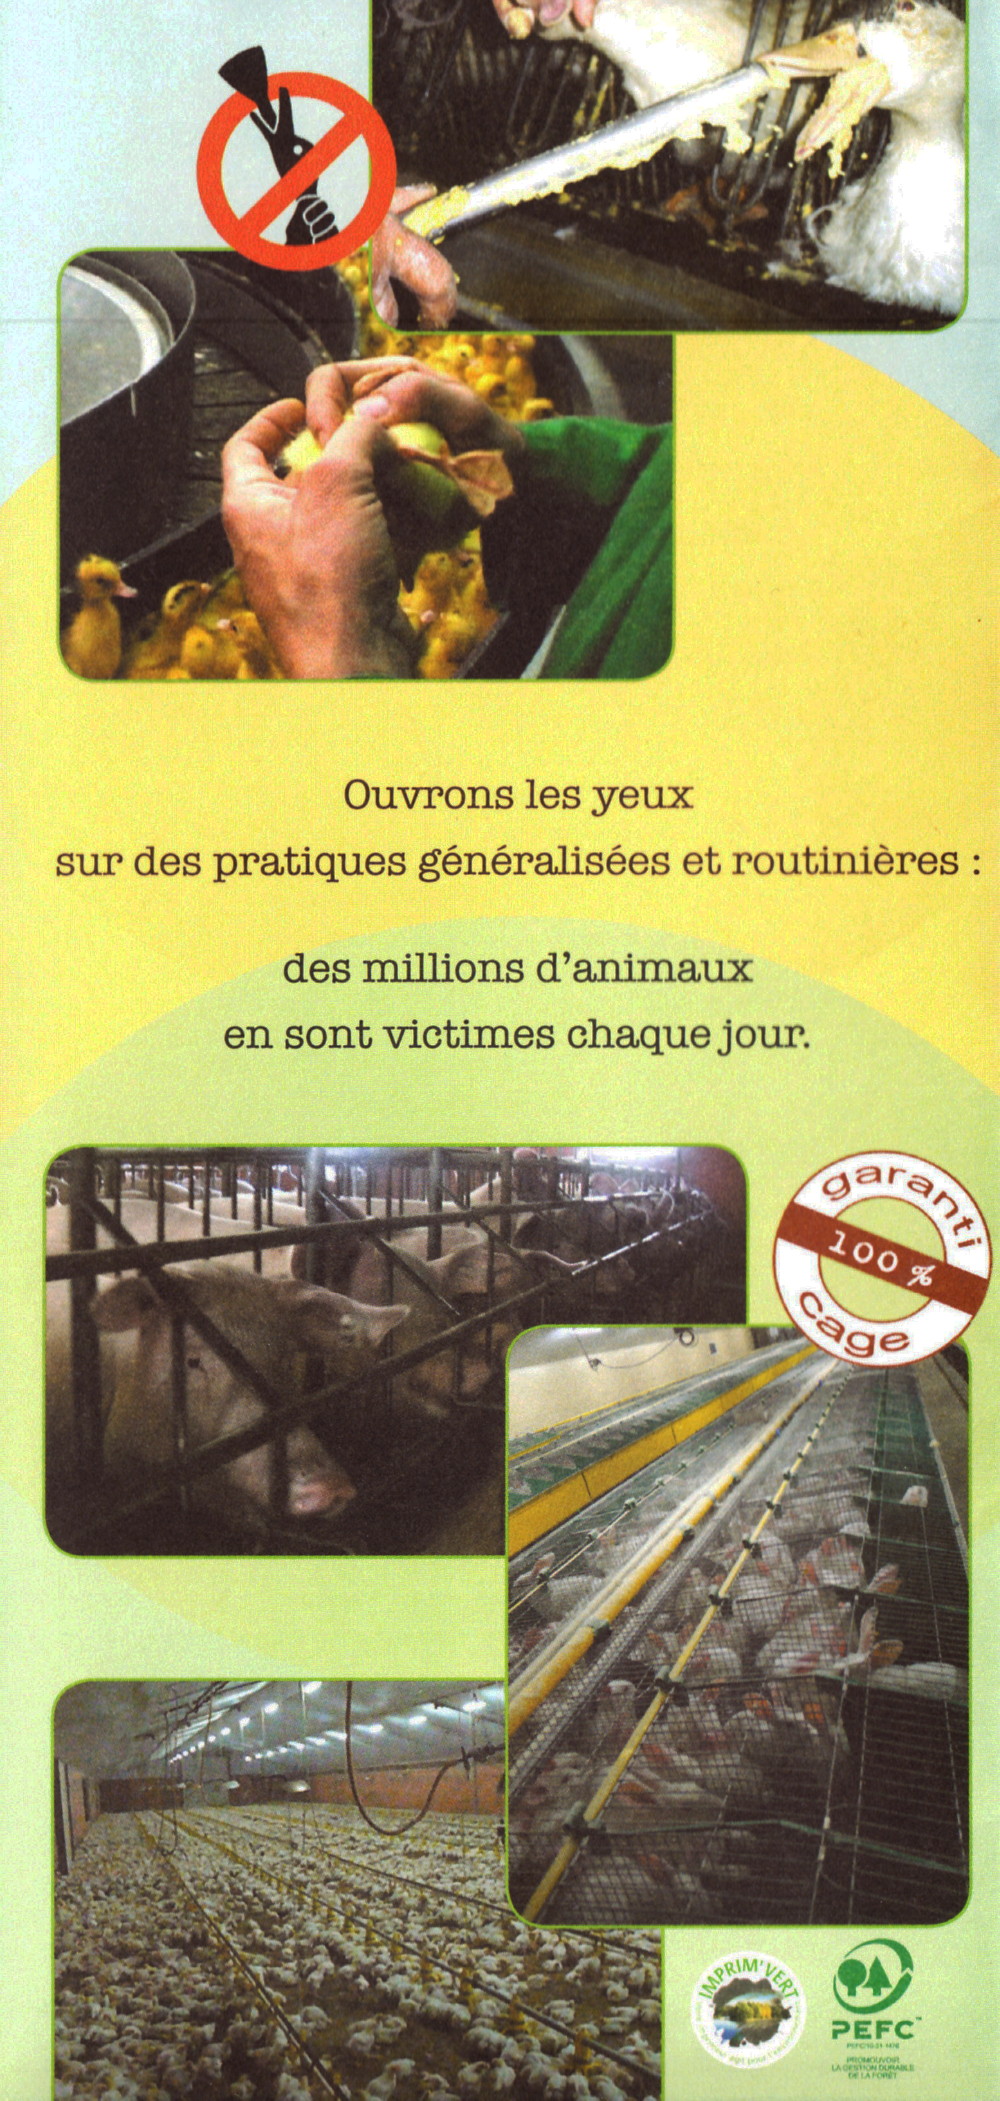 Abolition du foie gras 11/11/2010 Paris : compte-rendu 101111040640853867097083